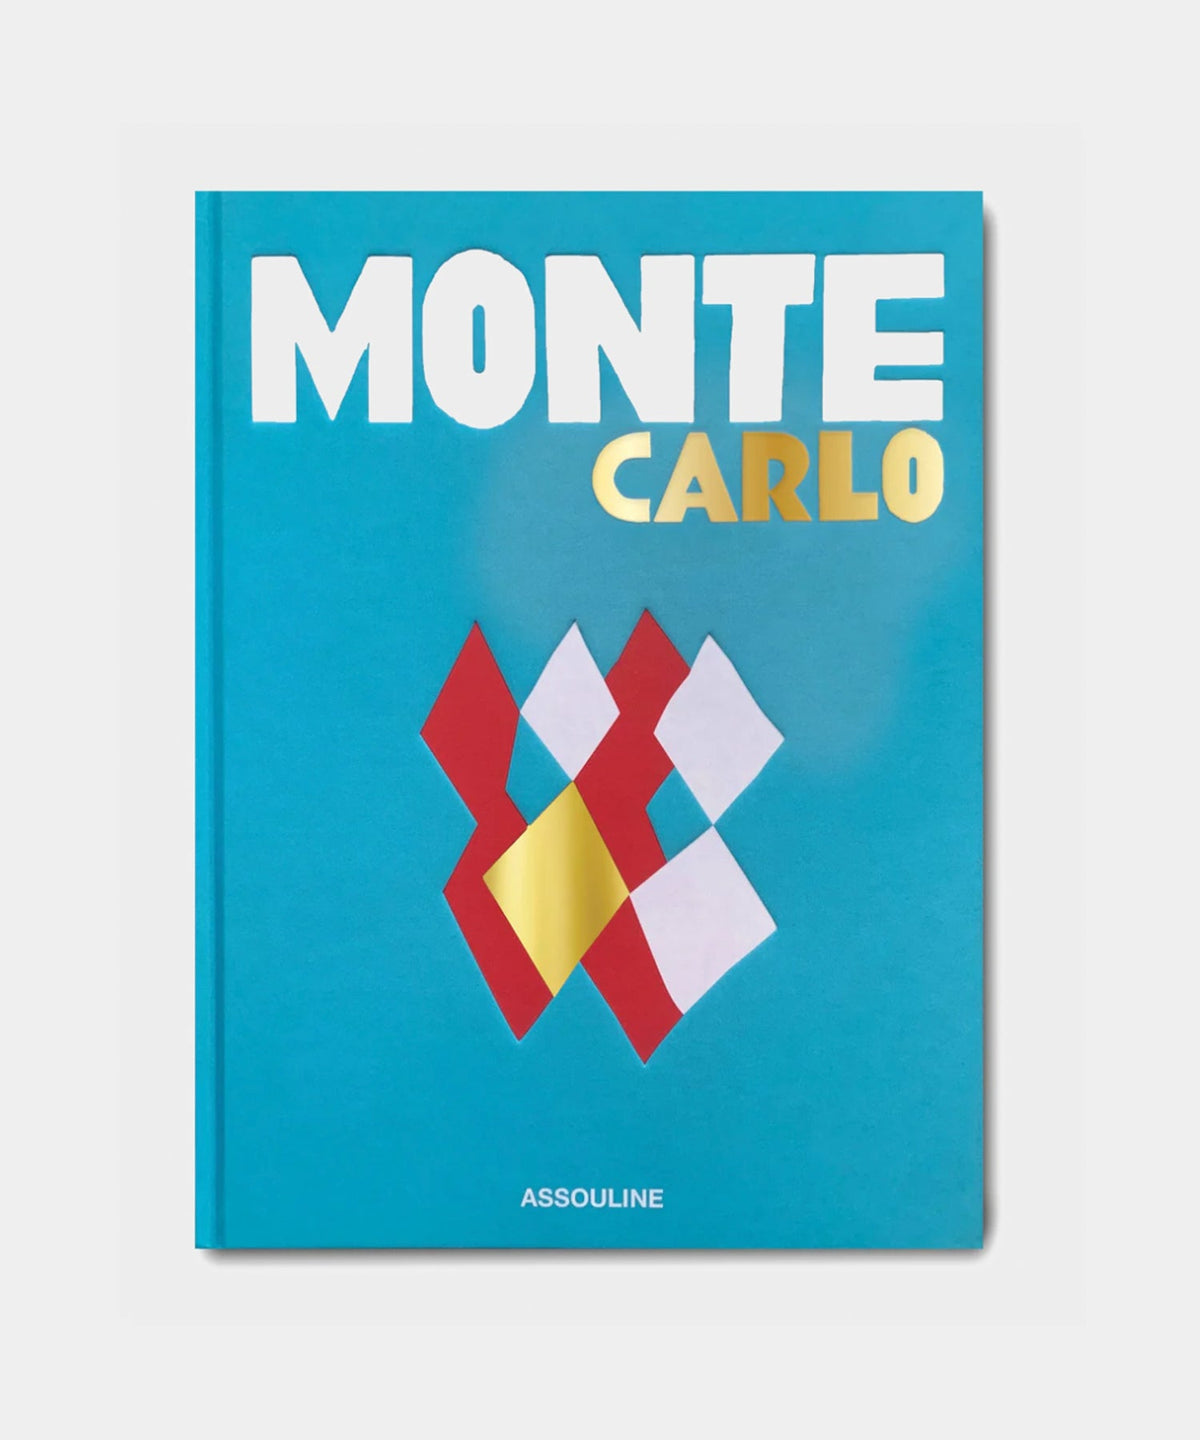 Assouline "Monte Carlo" Book